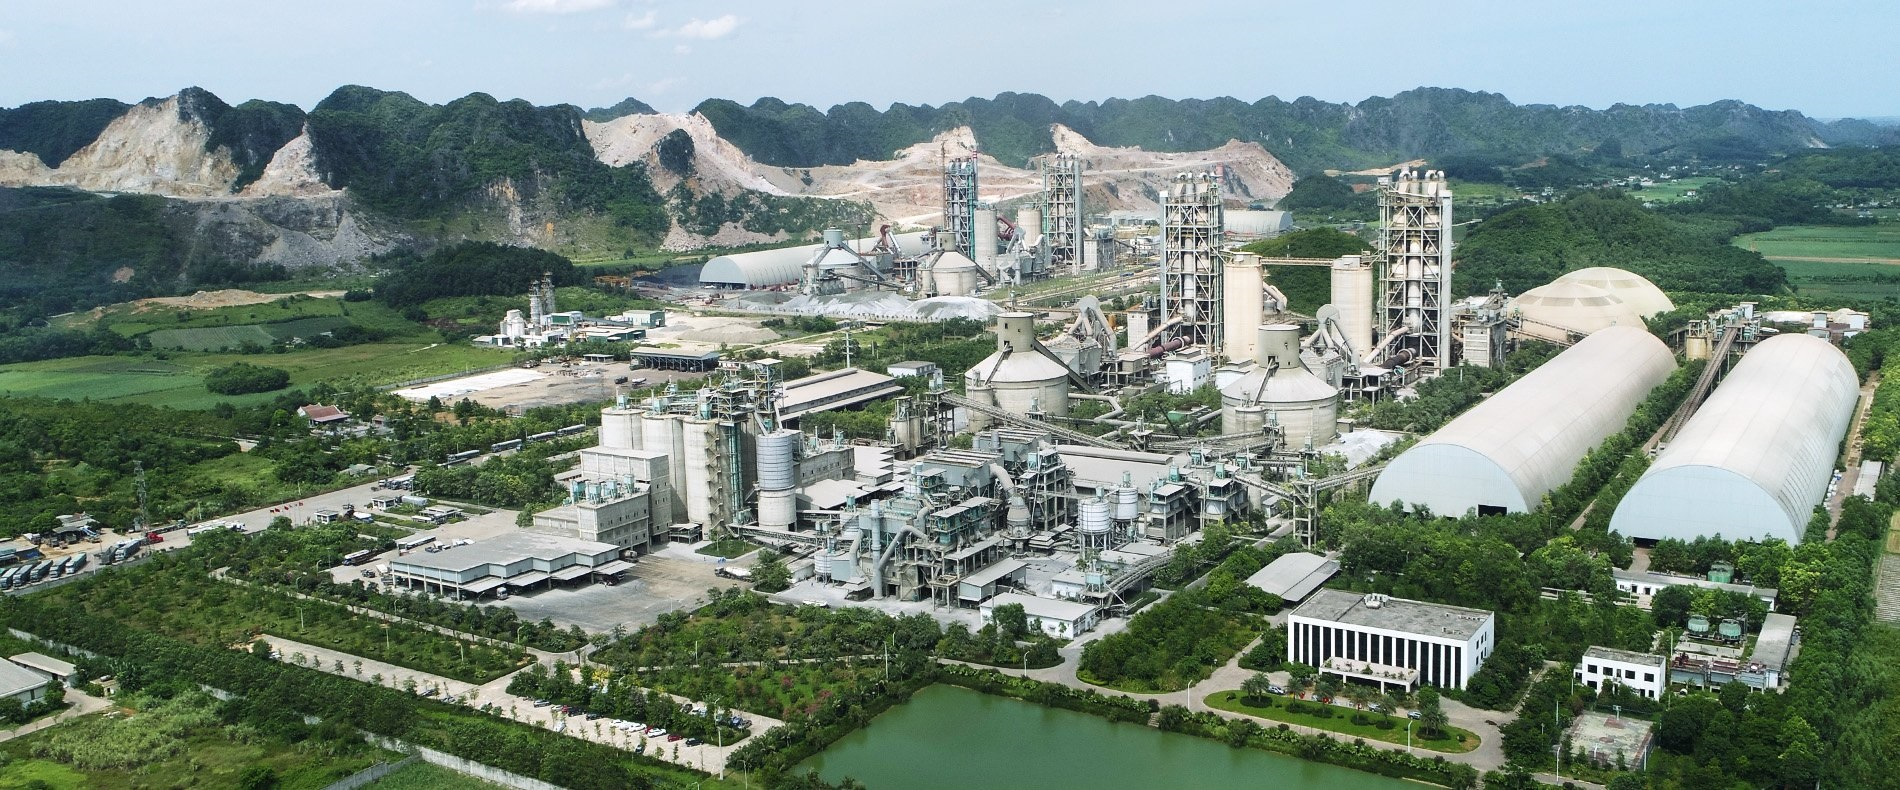 Công ty Xi măng Long Sơn có công suất 10,5 triệu tấn/năm